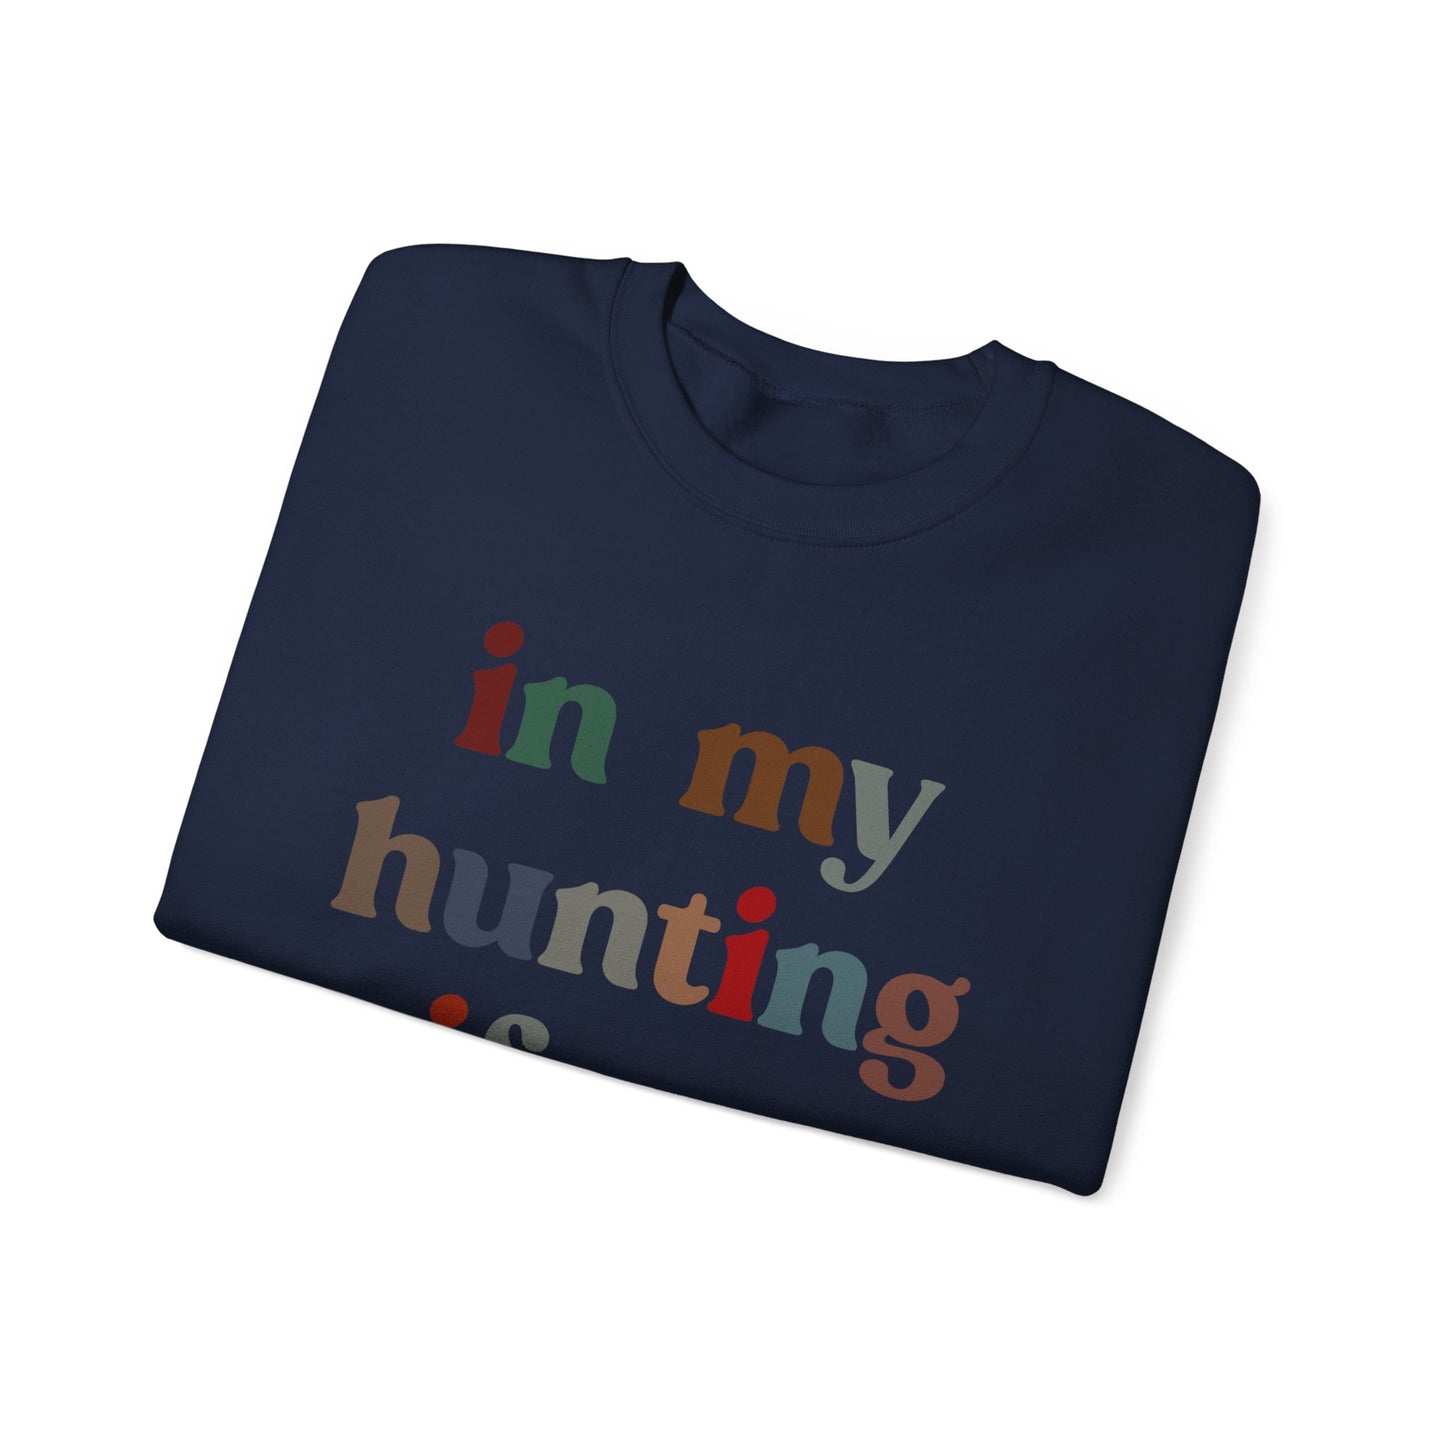 In My Hunting Wife Era Sweatshirt, Hunter Wife Sweatshirt, Gift for Wife from Husband, Hunting Wife Sweatshirt, Hunting Season Shirt, S1320